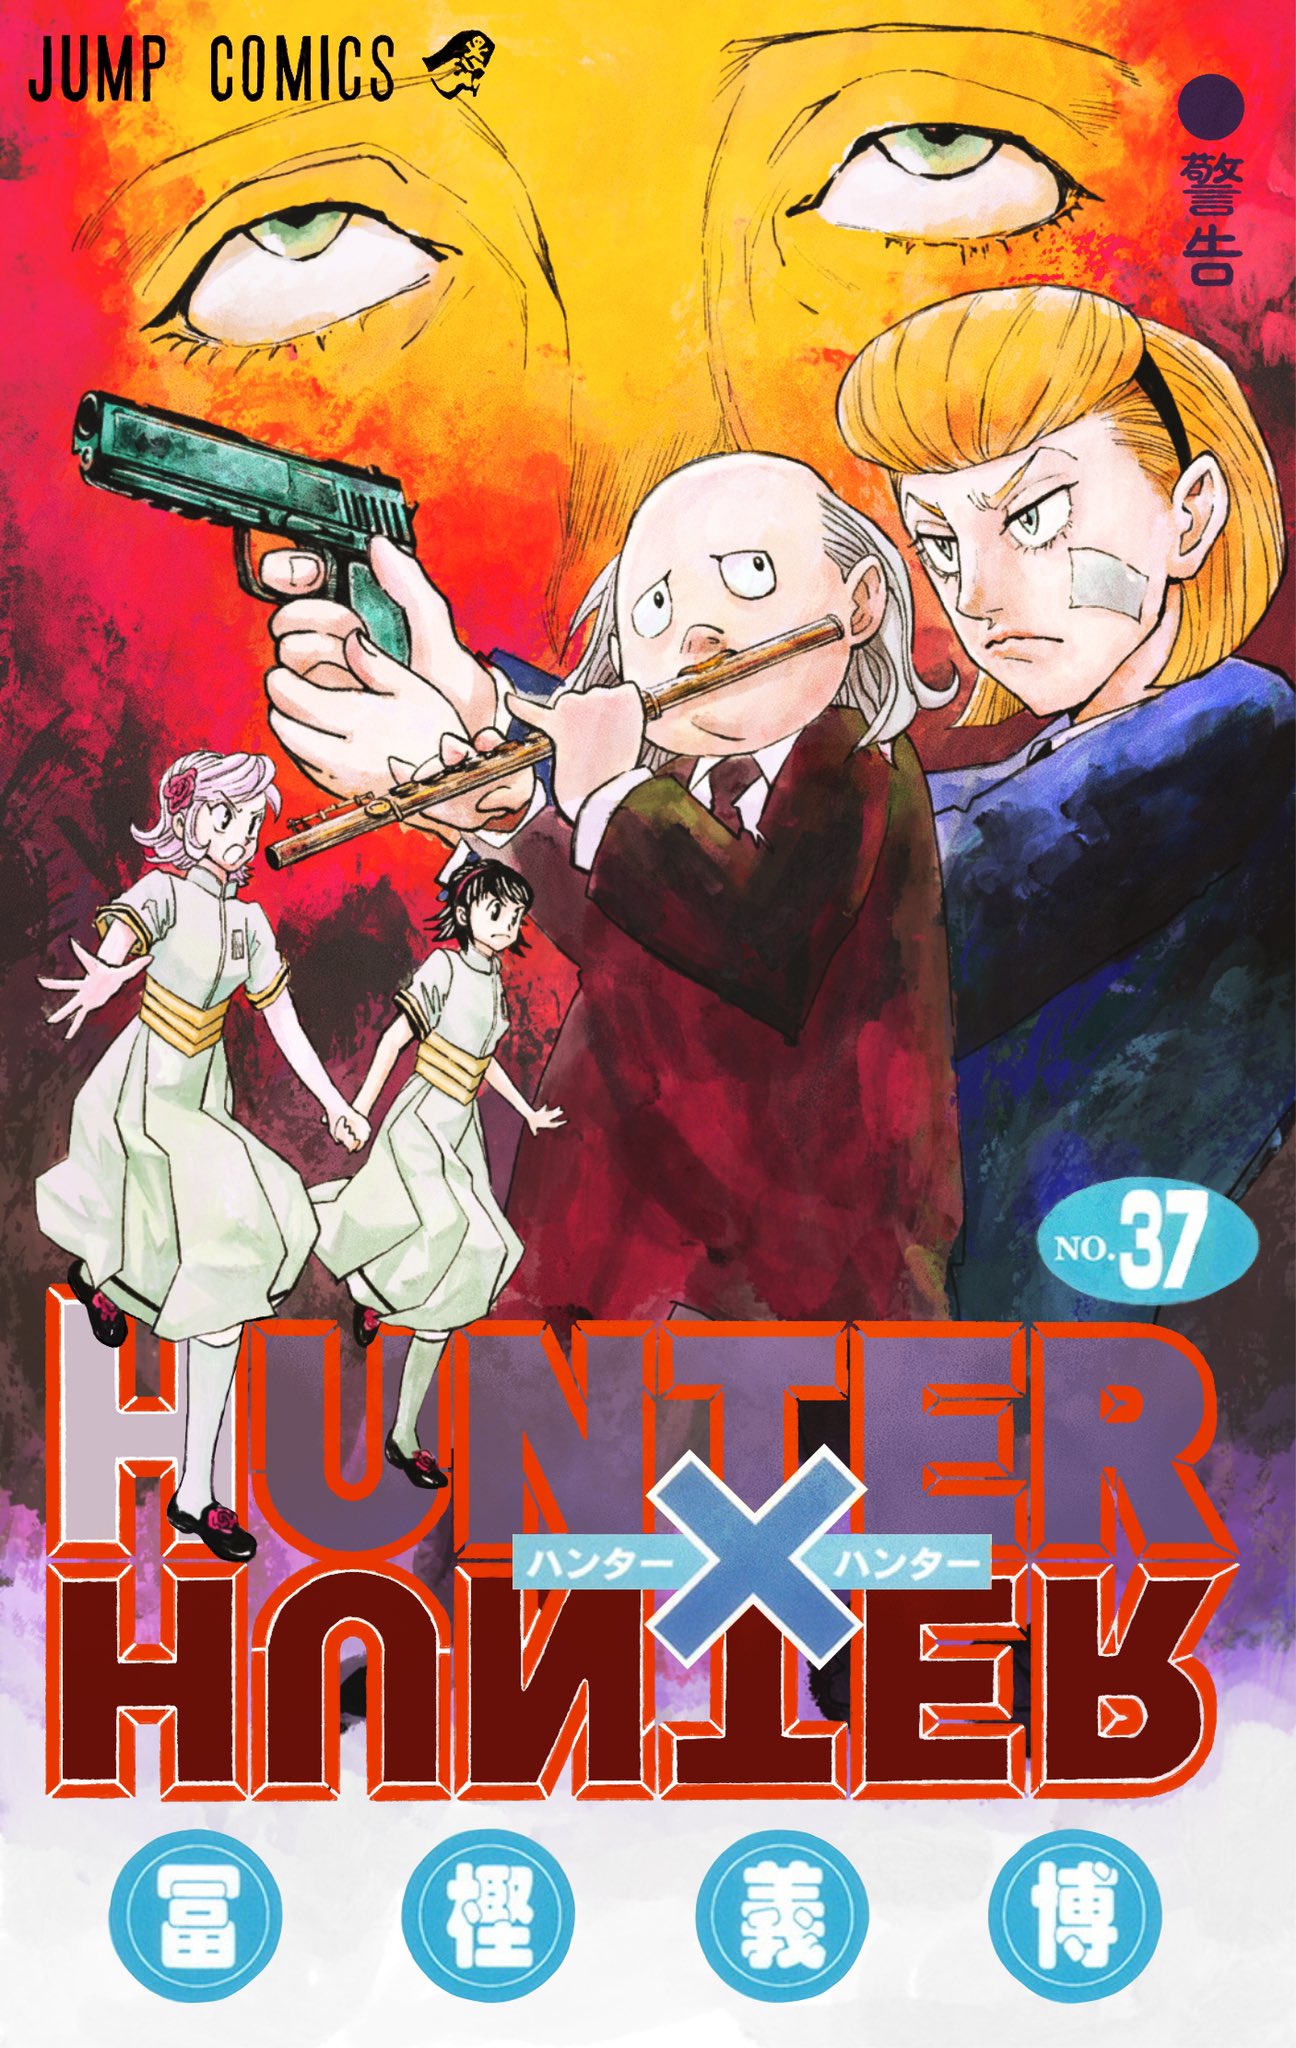 漫画模写rtaチャンネル ハンターハンター37巻の表紙をかってに描いてみました センリツがセンターです笑 ハンターハンター Hunterhunter ファンアート T Co Usiojngqri Twitter